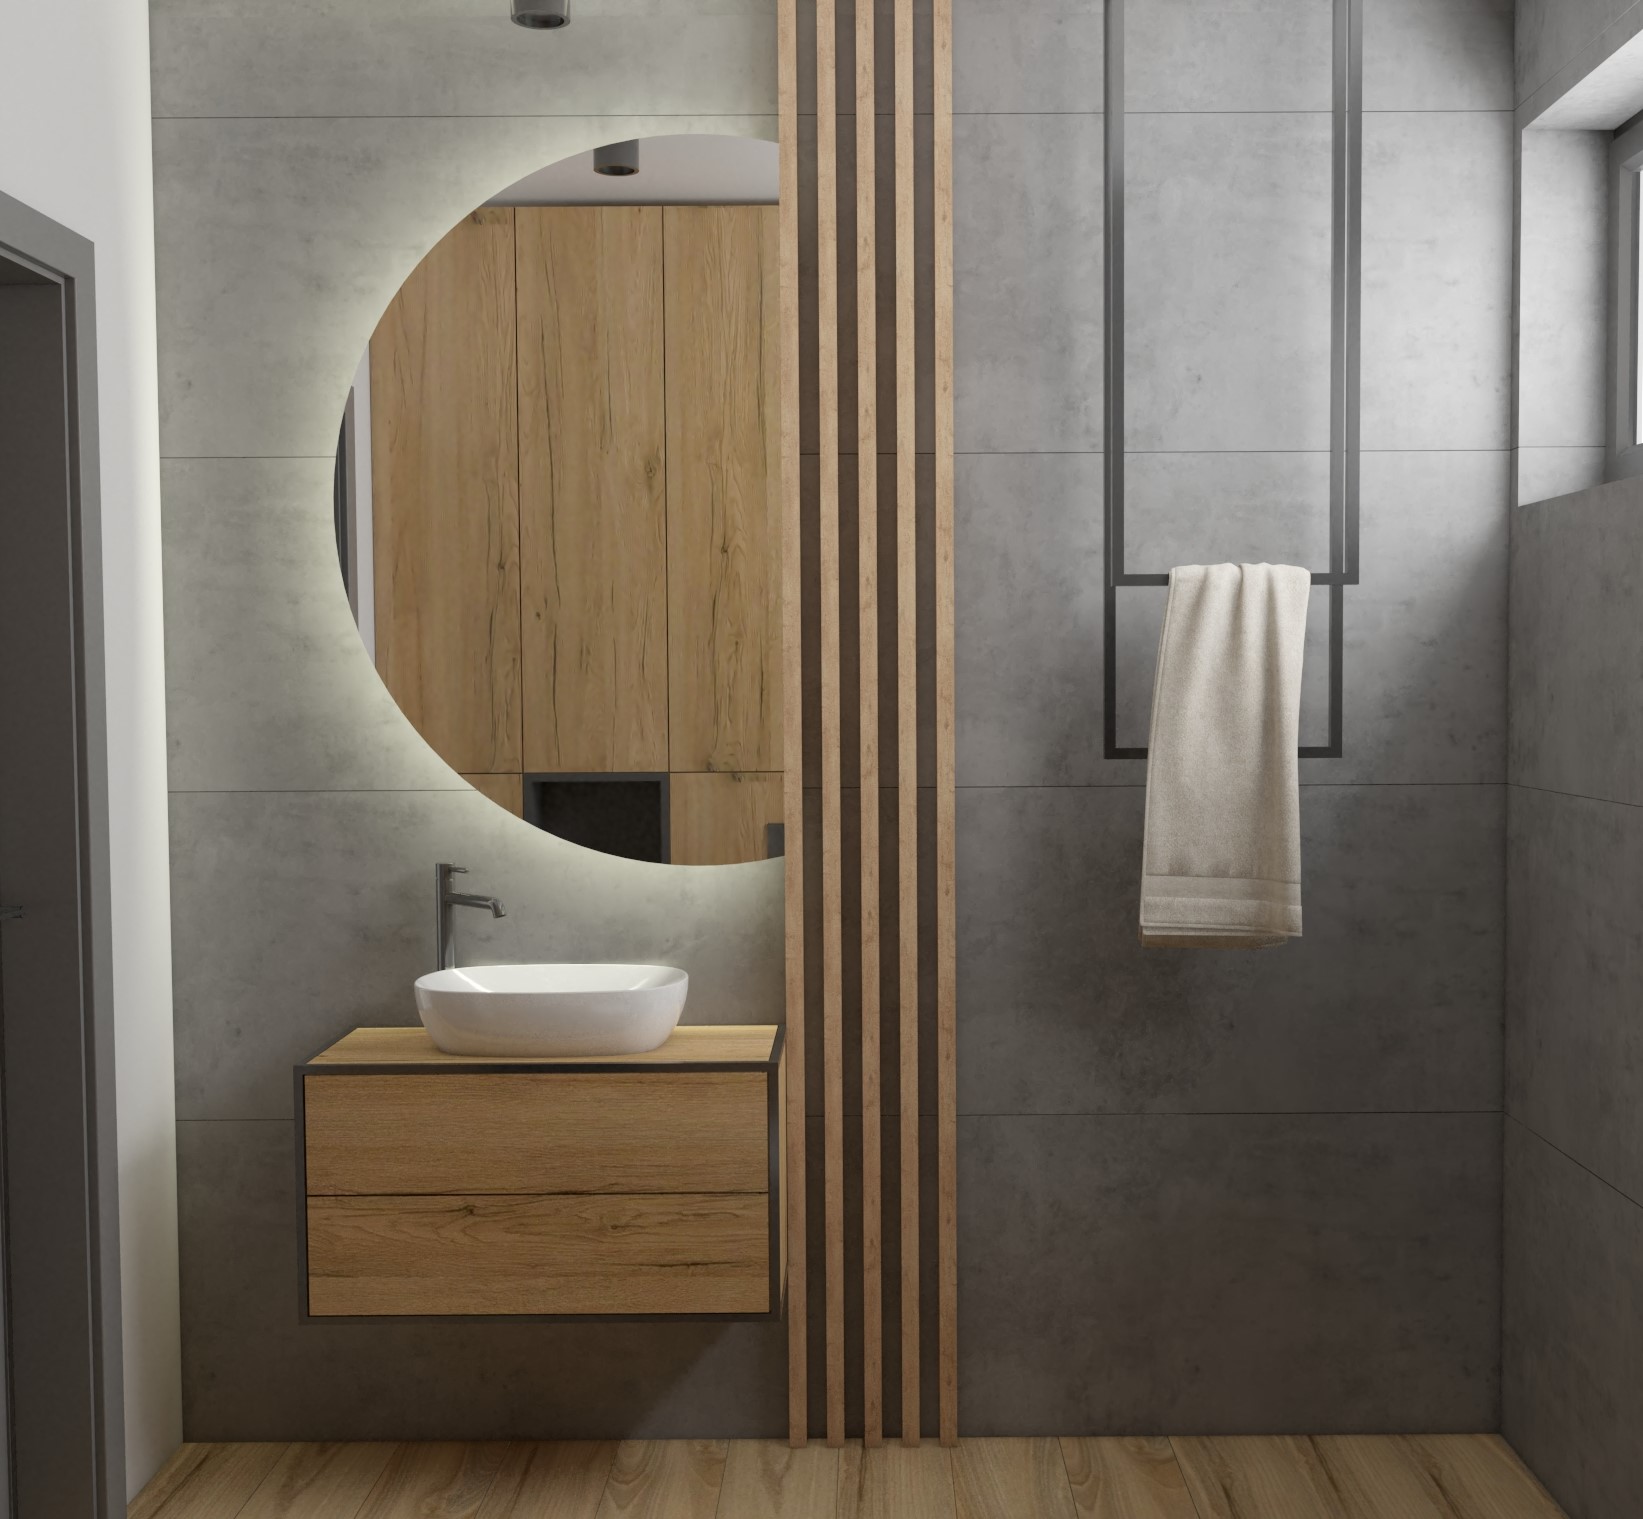 Projekt łazienki wykonany przez Wizualizacje Wnętrz Sztejkowski, gdzie zastosowano drewniane lamele do dekoracji ściany w pomieszczeniu kąpielowym.